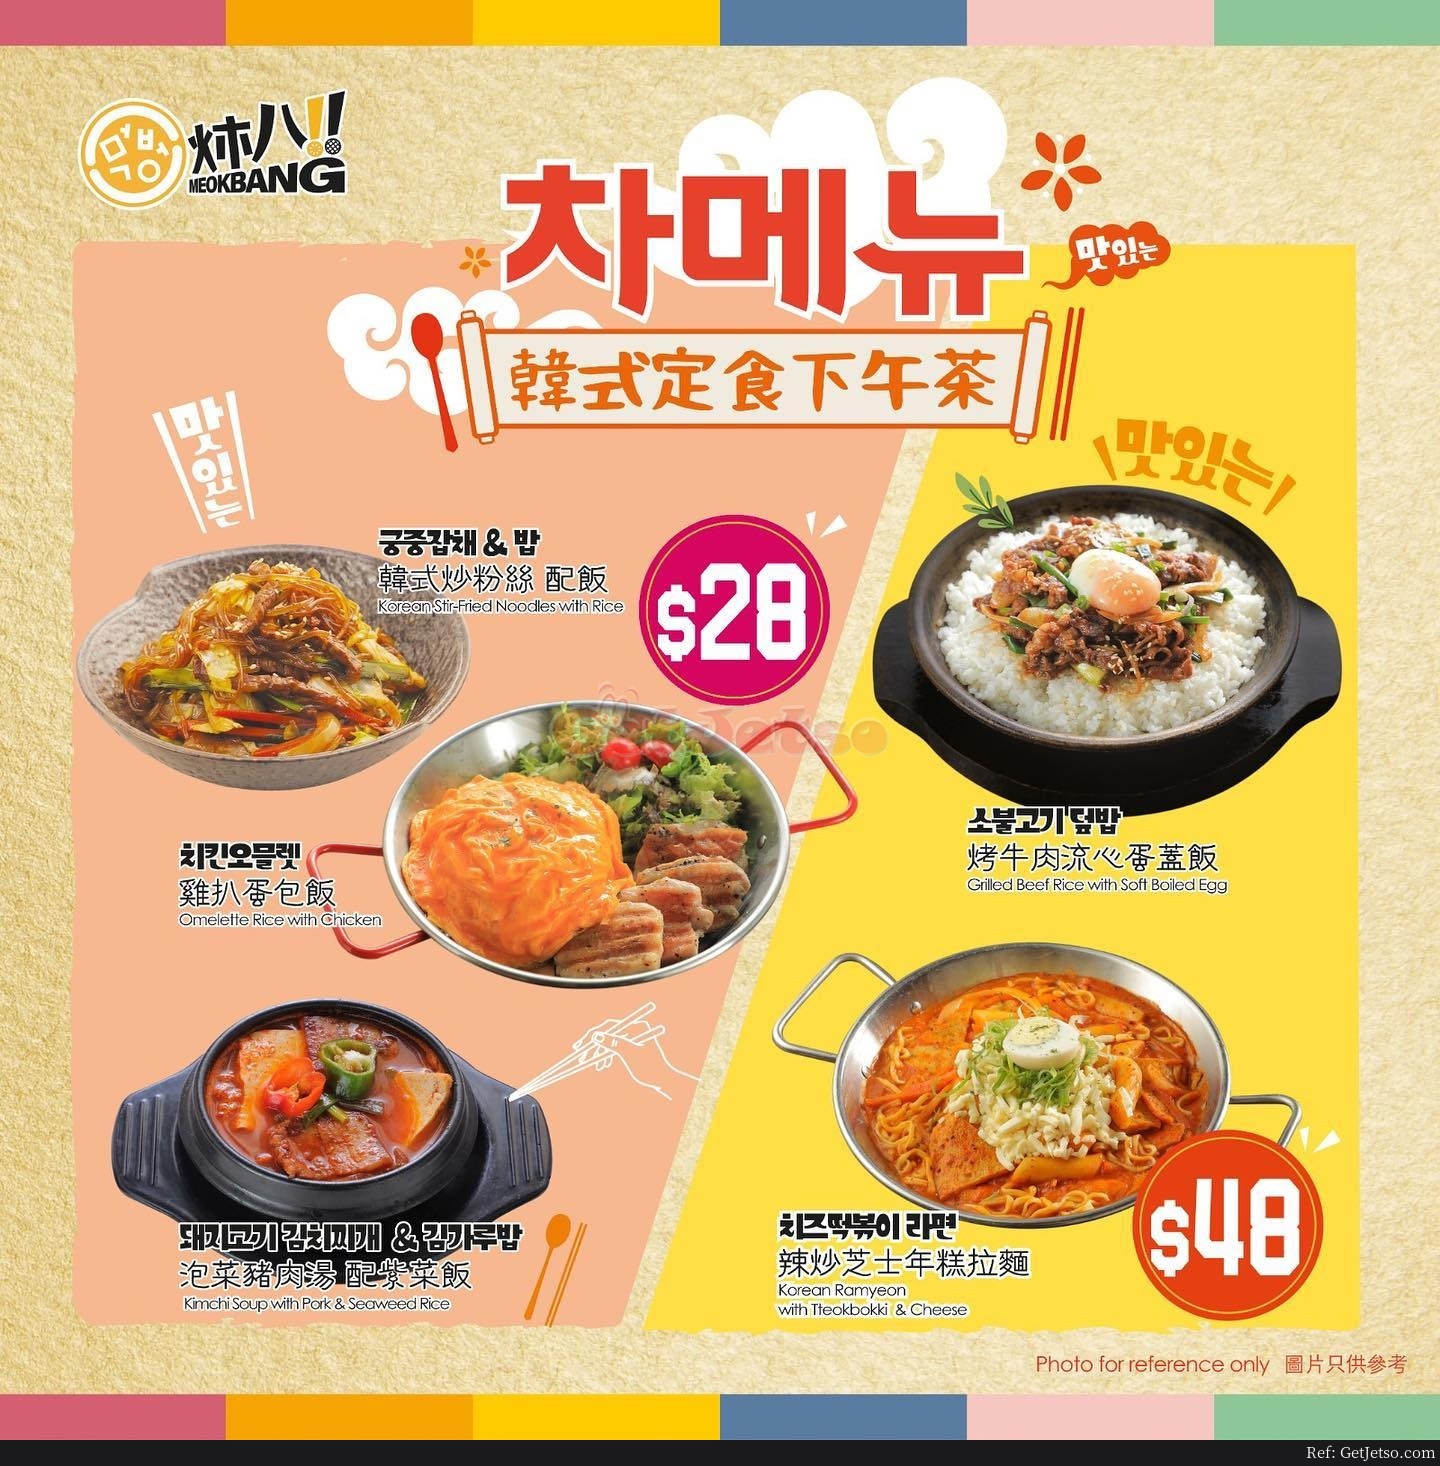 炑八韓烤燒肉套餐外賣7折優惠(1月6日更新)圖片2